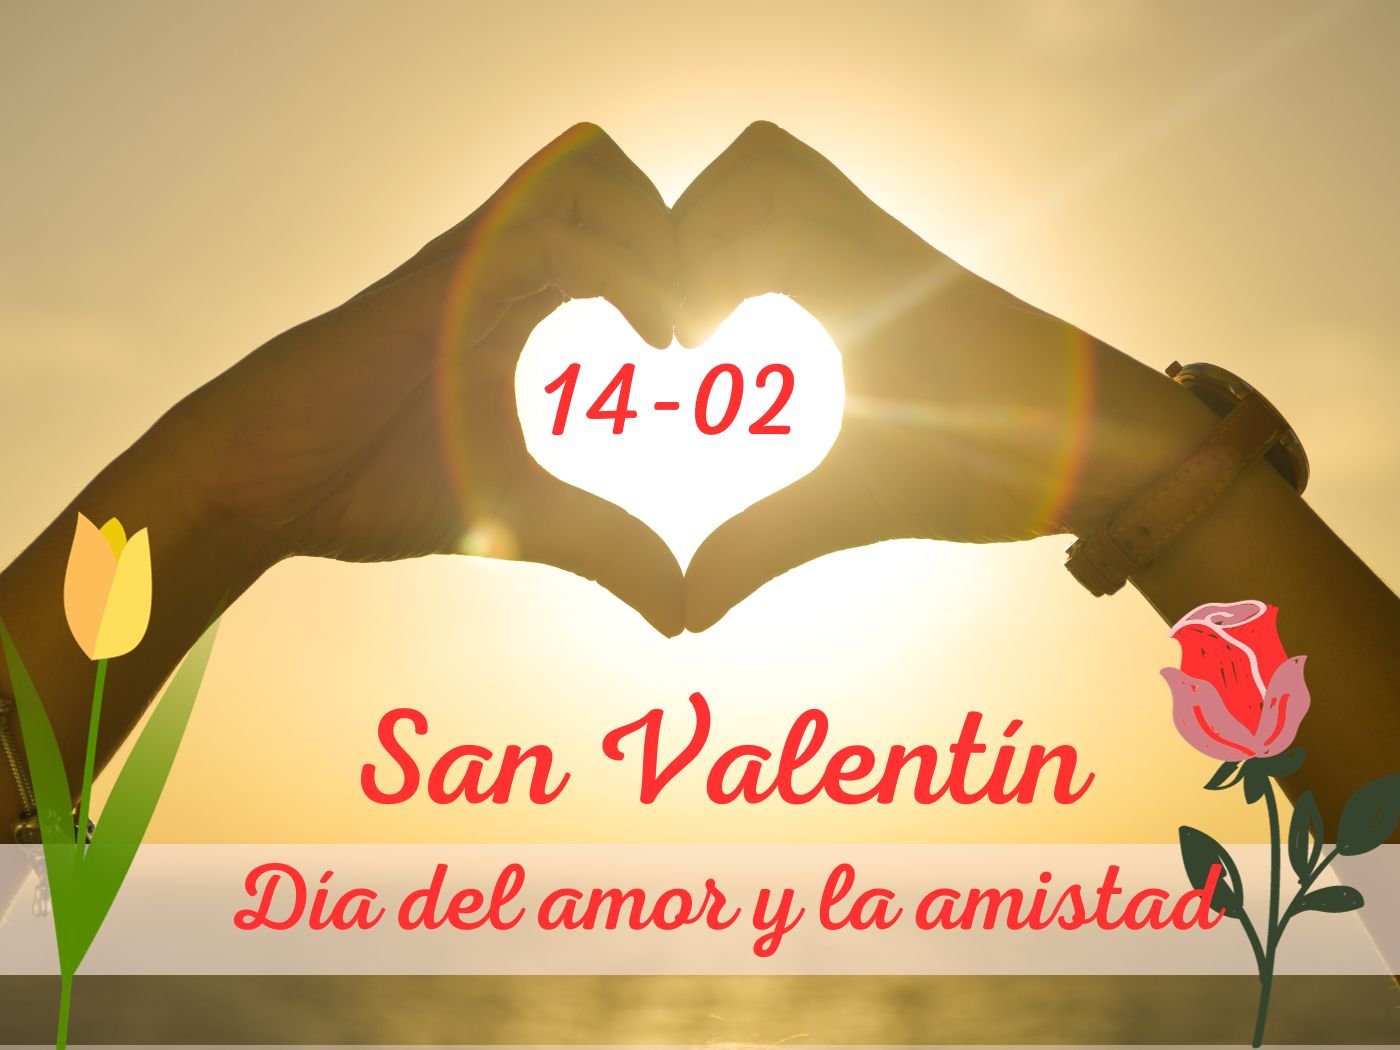 San Valentín: qué se celebra. Datos y frases sobre el amor. - Calendarr